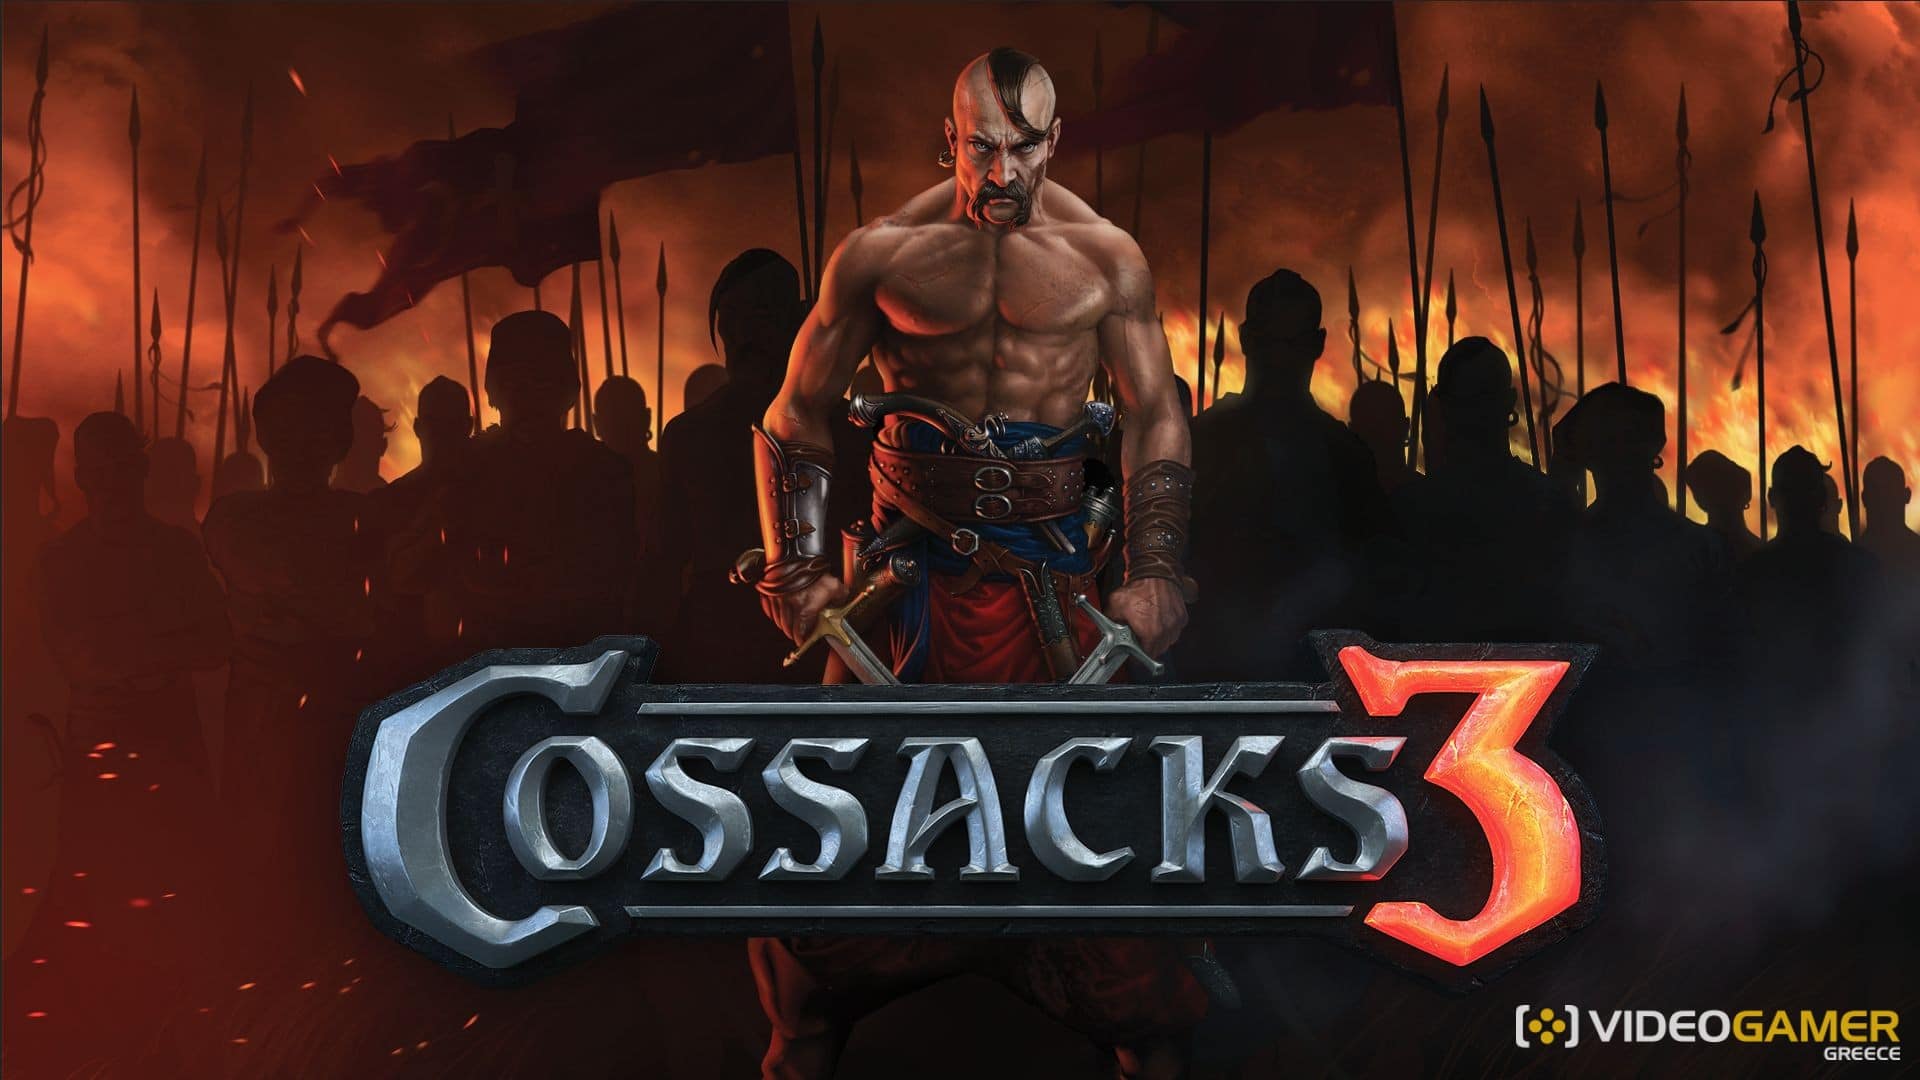 cossacks 3 videogamer.gr